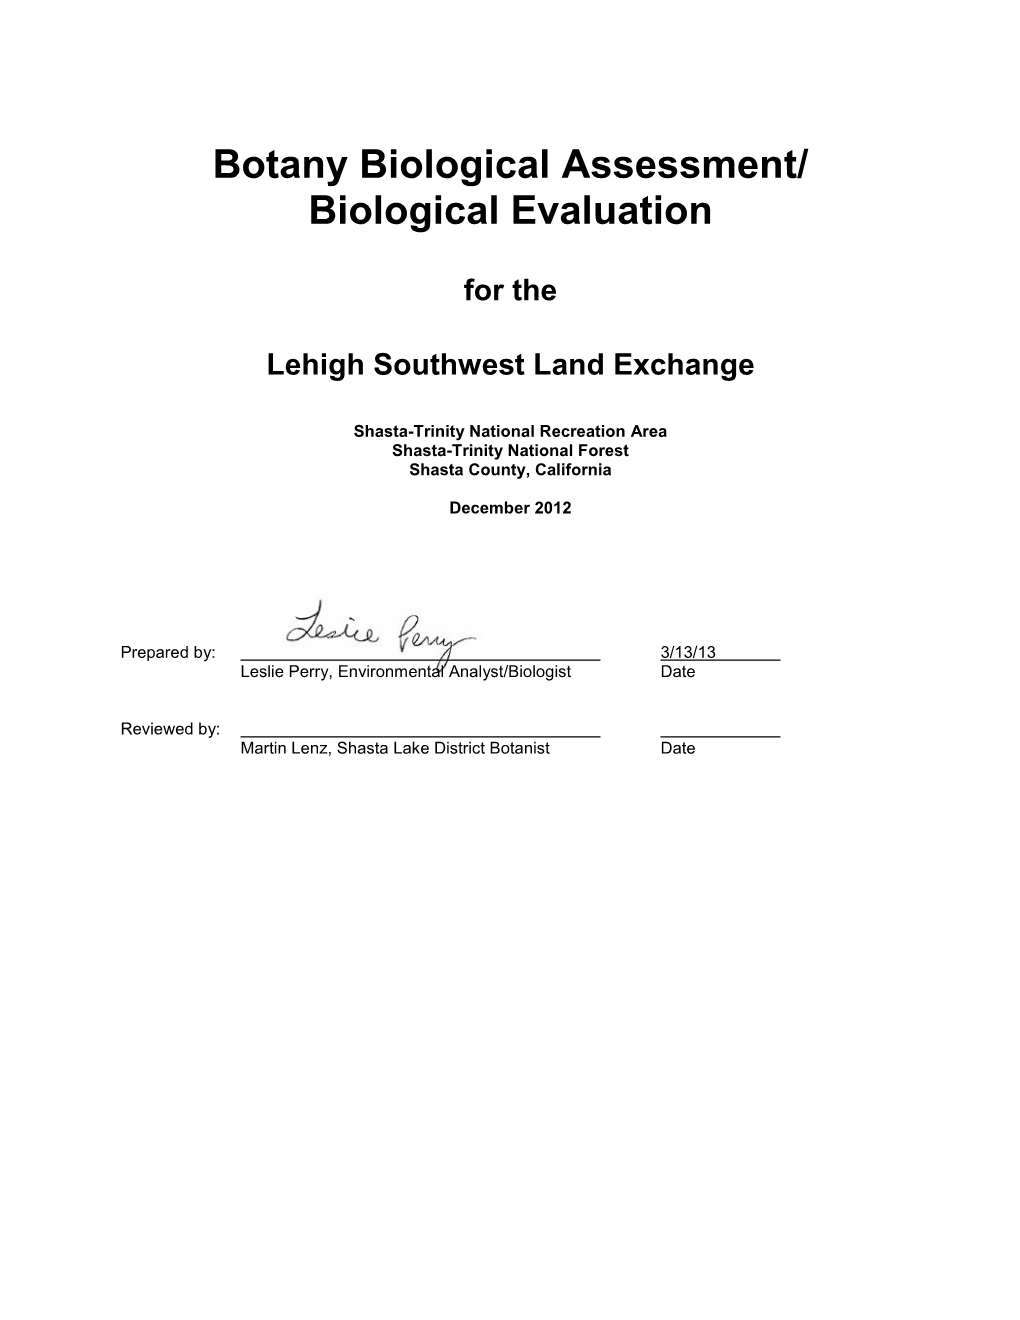 Botany Biological Assessment/ Biological Evaluation